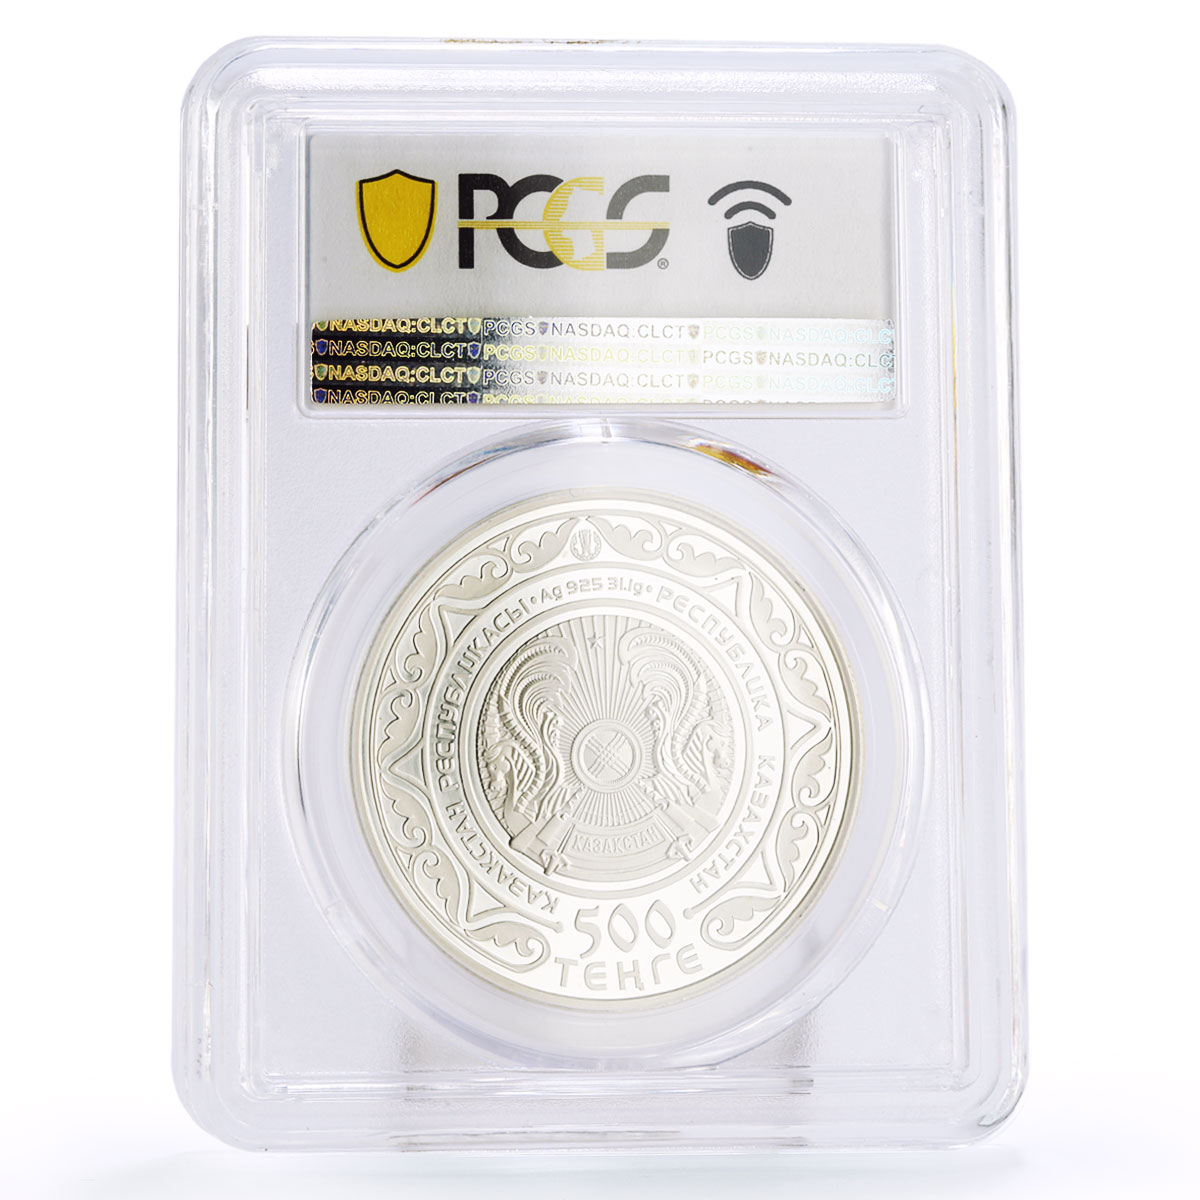 Kazakhstan 500 tenge Eurasian Economic Union PR69 PCGS color silver coin 2015